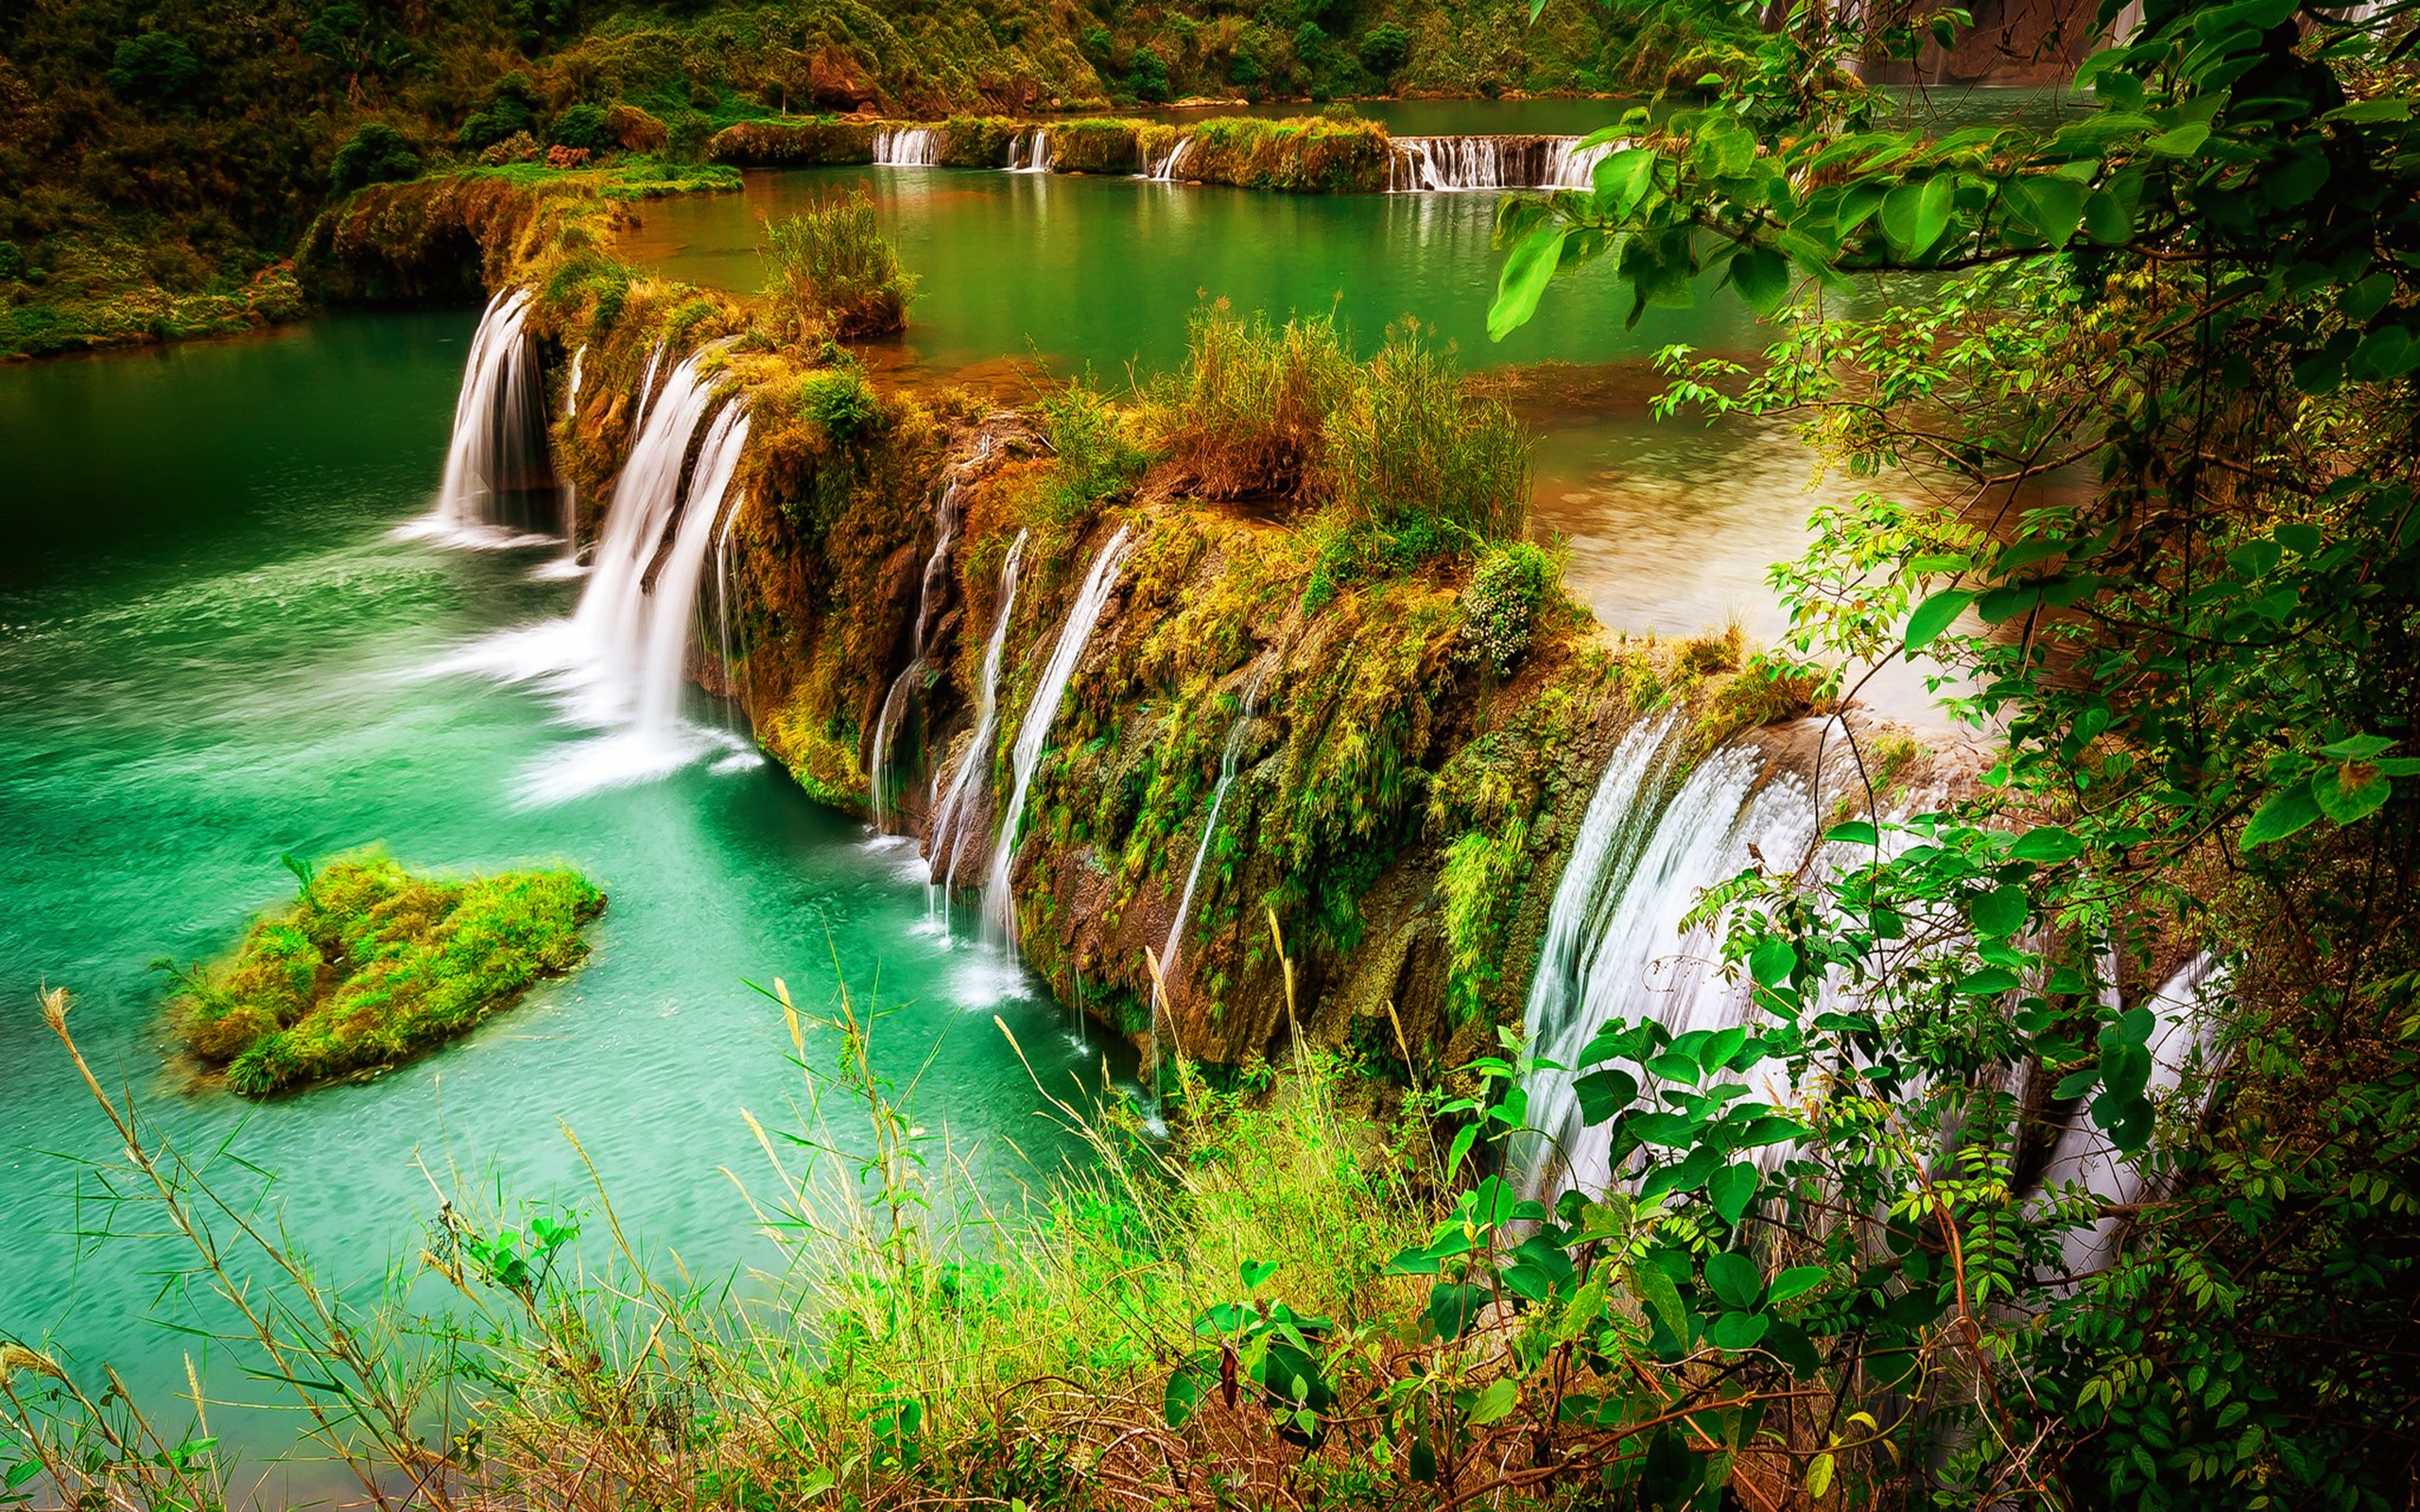 Скачать обои бесплатно Река, Водопады, Водопад, Лес, Дерево, Зеленый, Земля/природа картинка на рабочий стол ПК